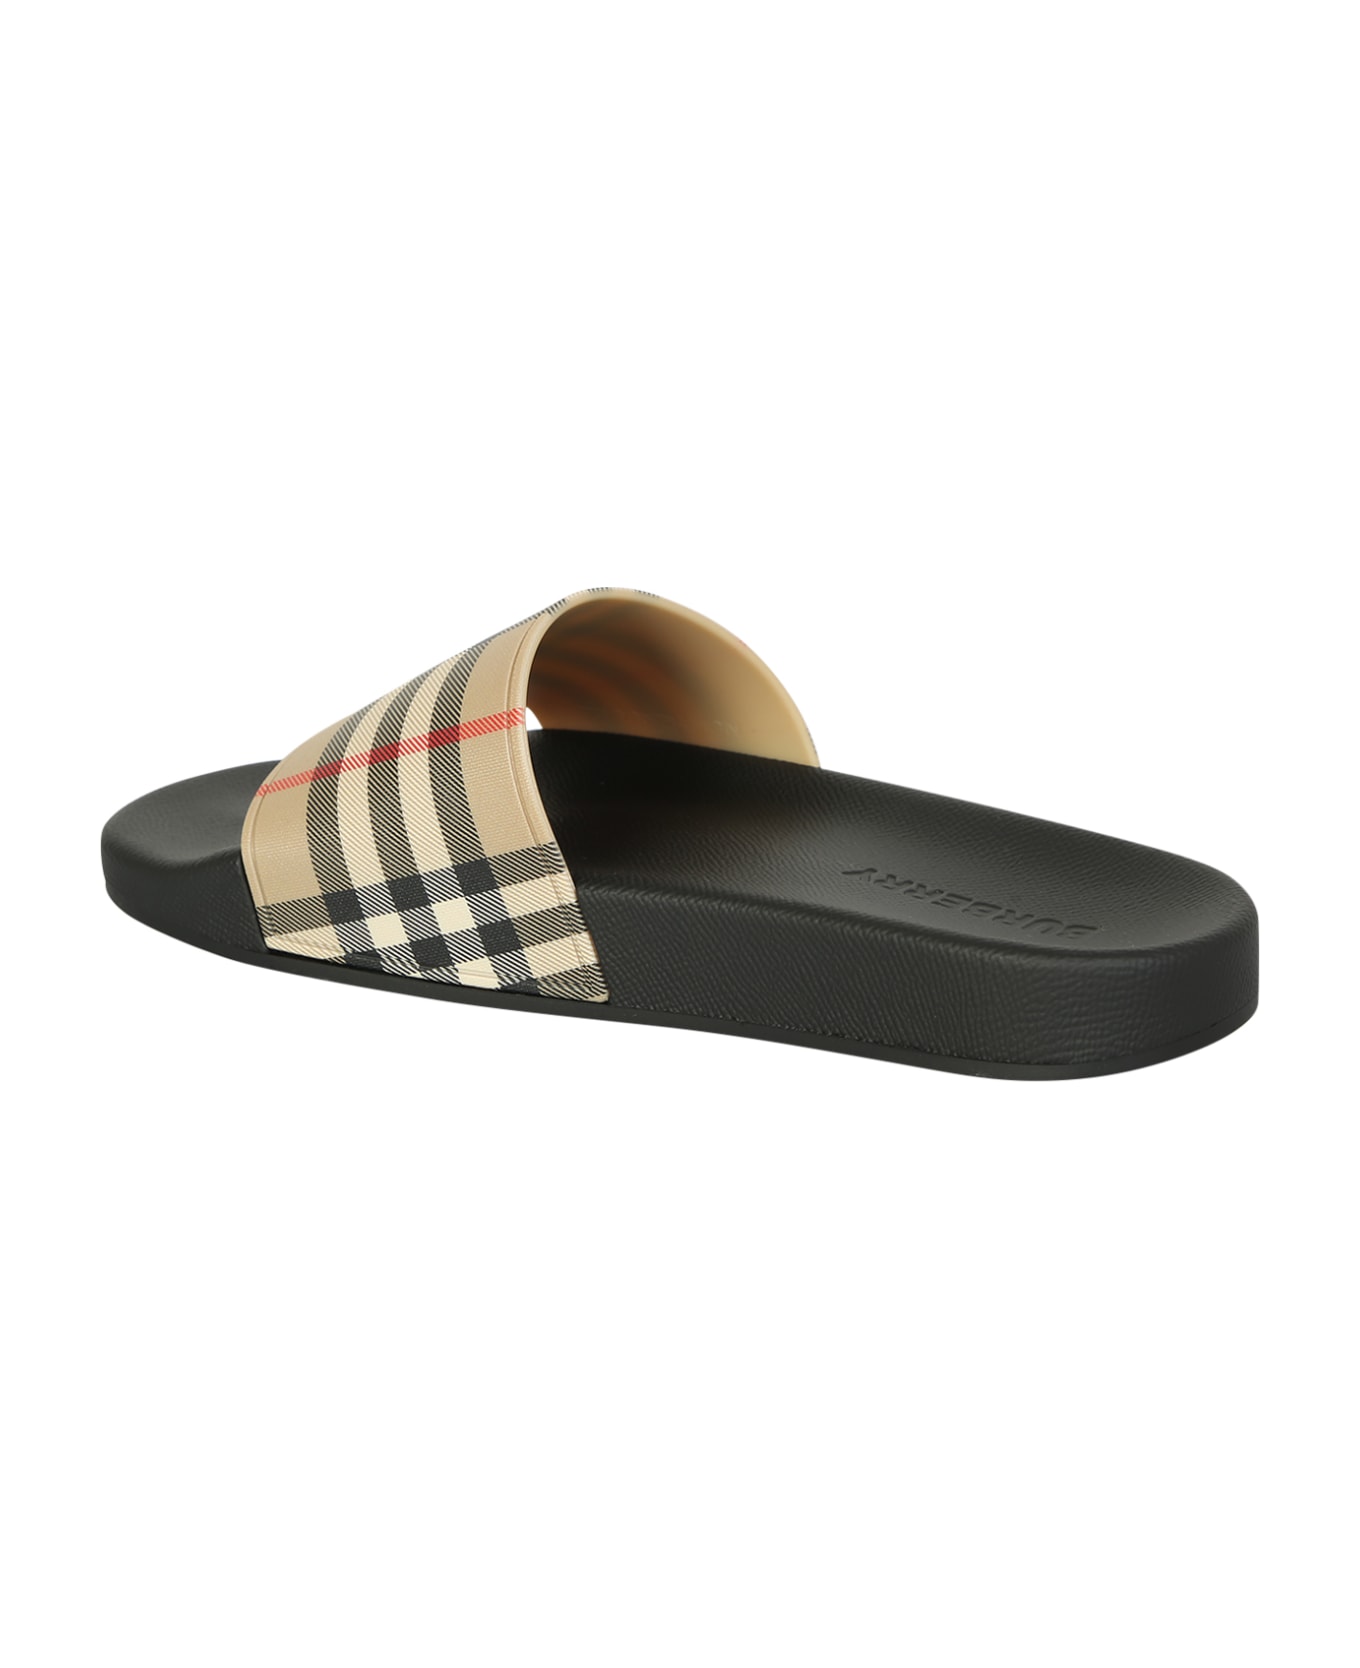 Burberry Sandals - Beige